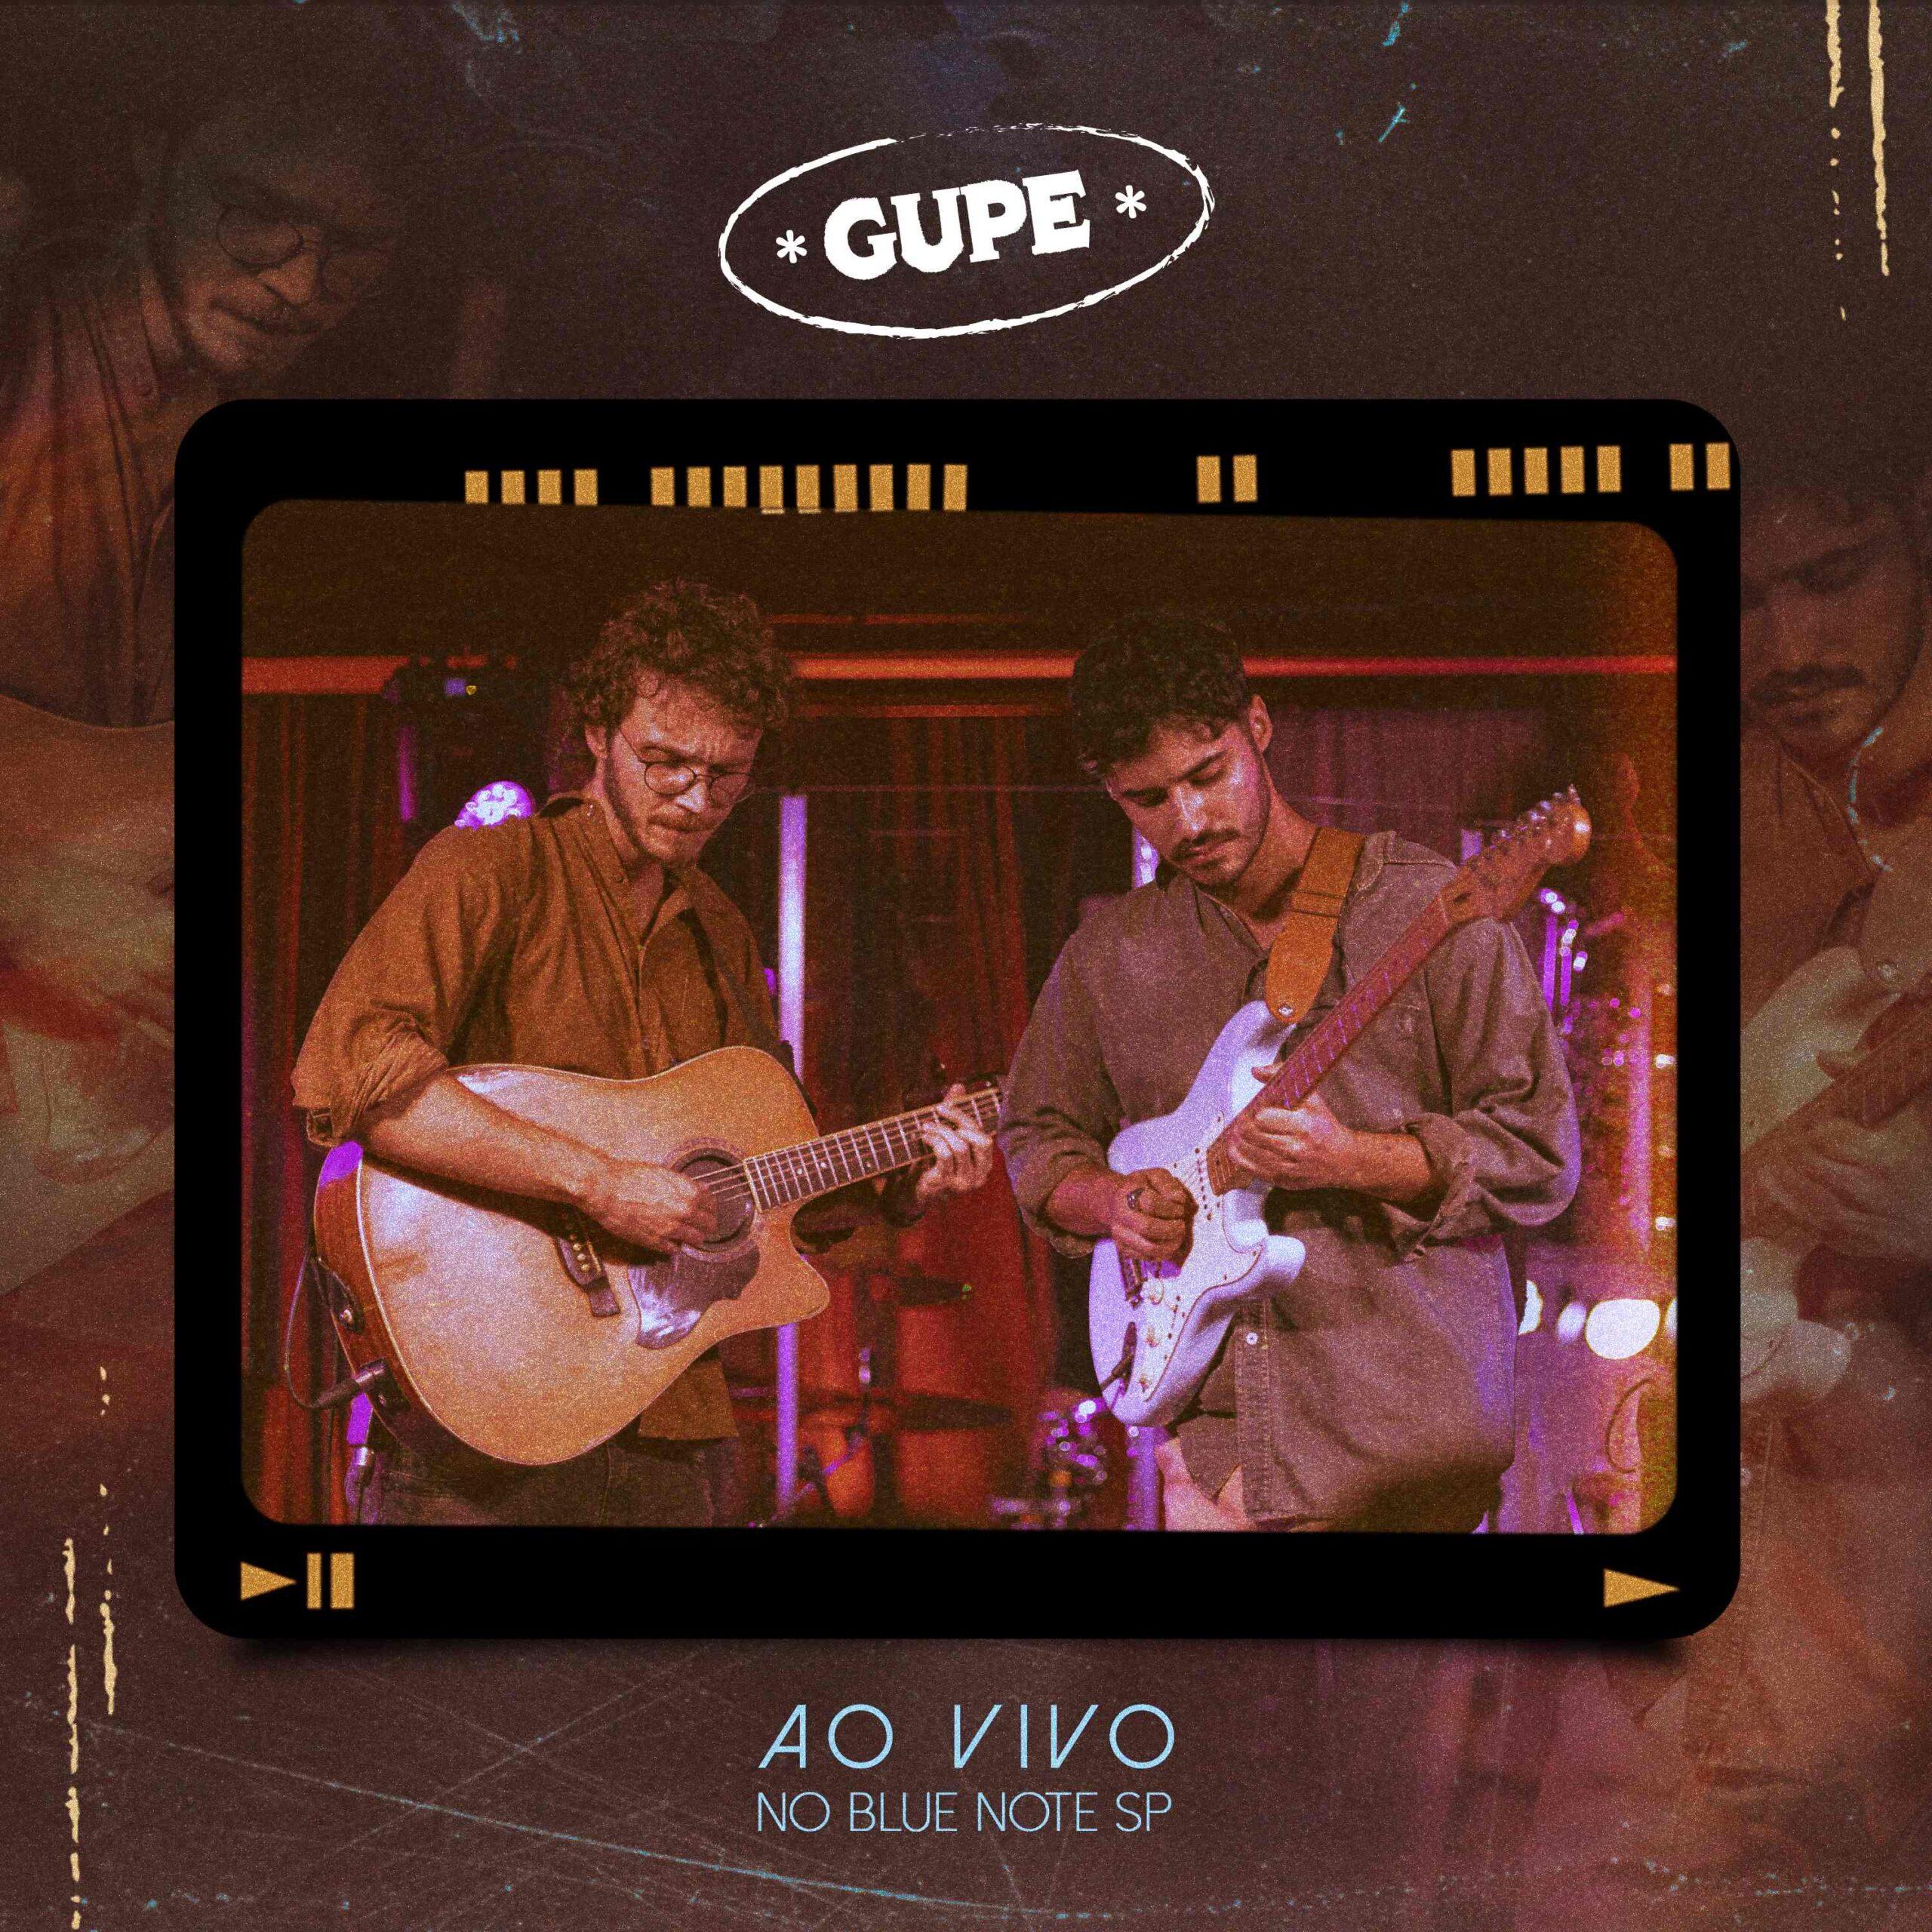 GUPE Lança EP “Ao Vivo No Blue Note São Paulo” Emoção e Talentos Unem-se no Palco